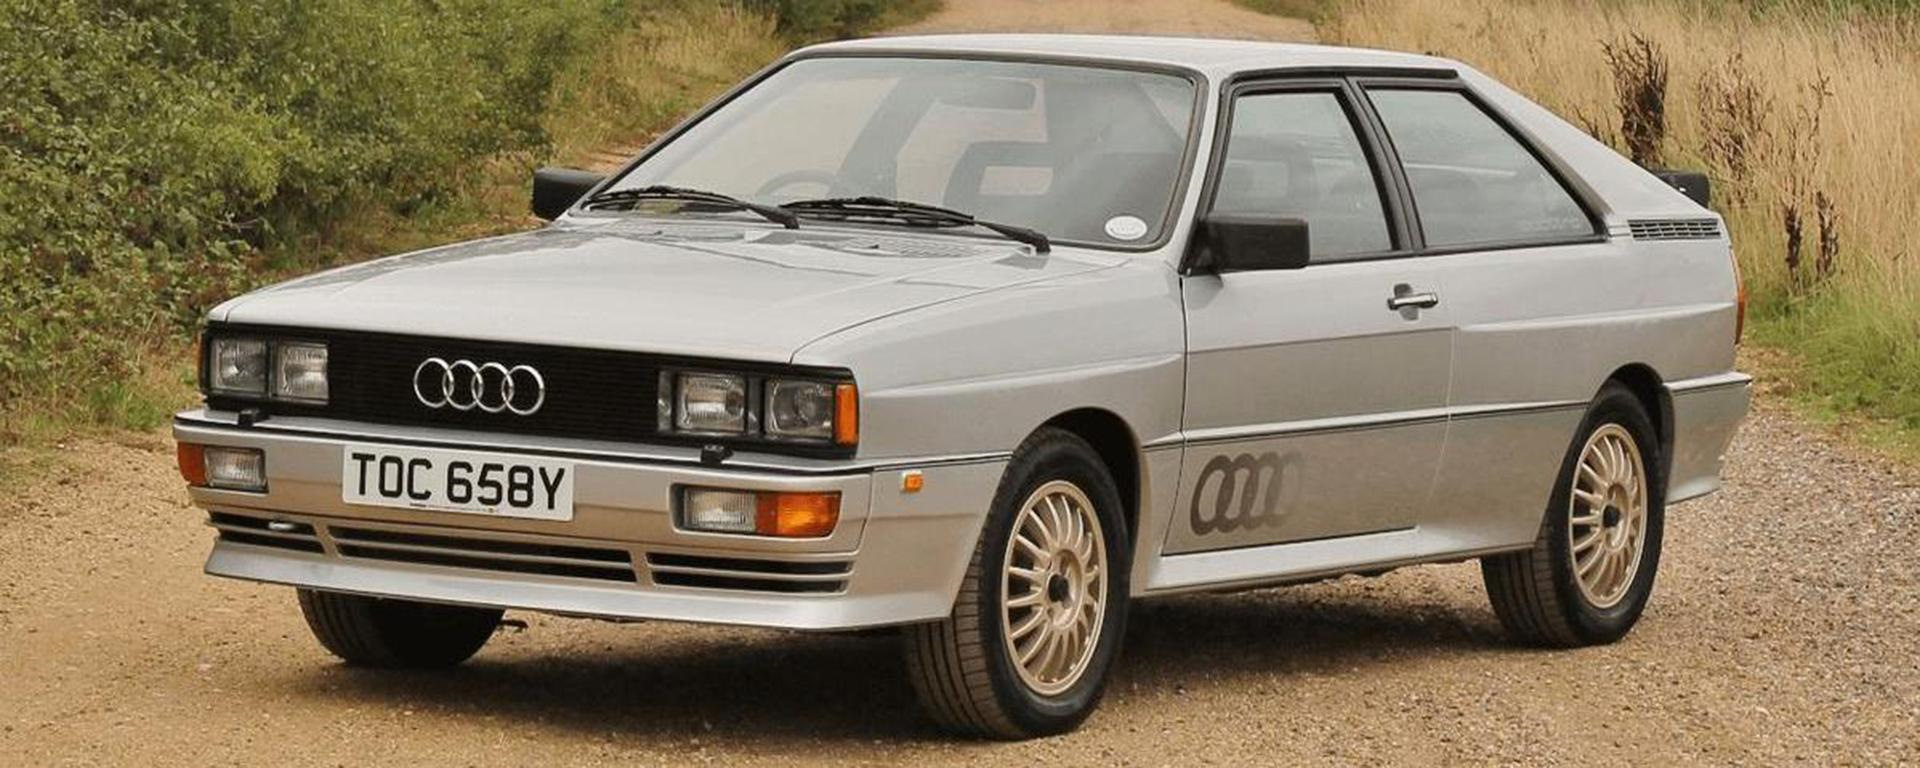 Купить ауди кватро бу. Ауди кватро 1980. "Audi" "quattro" "1990" TL. "Audi" "quattro" "1982" II. "Audi" "quattro" "1991" TL.